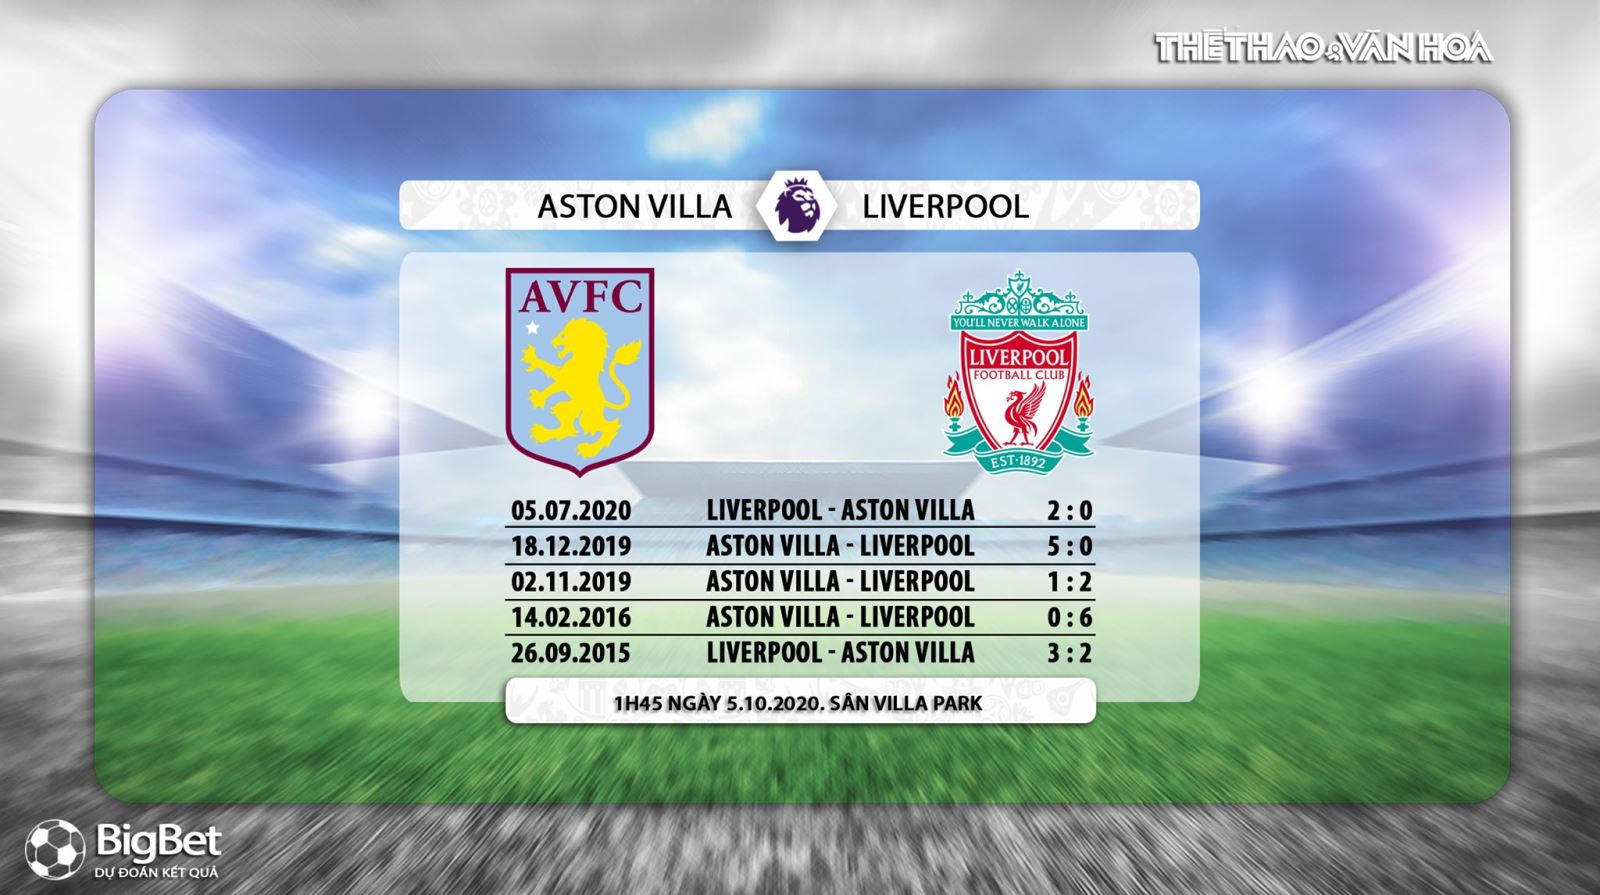 Aston Villa vs Liverpool, nhận định bóng đá, kèo bóng đá, nhận định bóng đá Aston Villa vs Liverpool, dự đoán Aston Villa vs Liverpool, trực tiếp Aston Villa vs Liverpool, Aston Villa, Liverpool